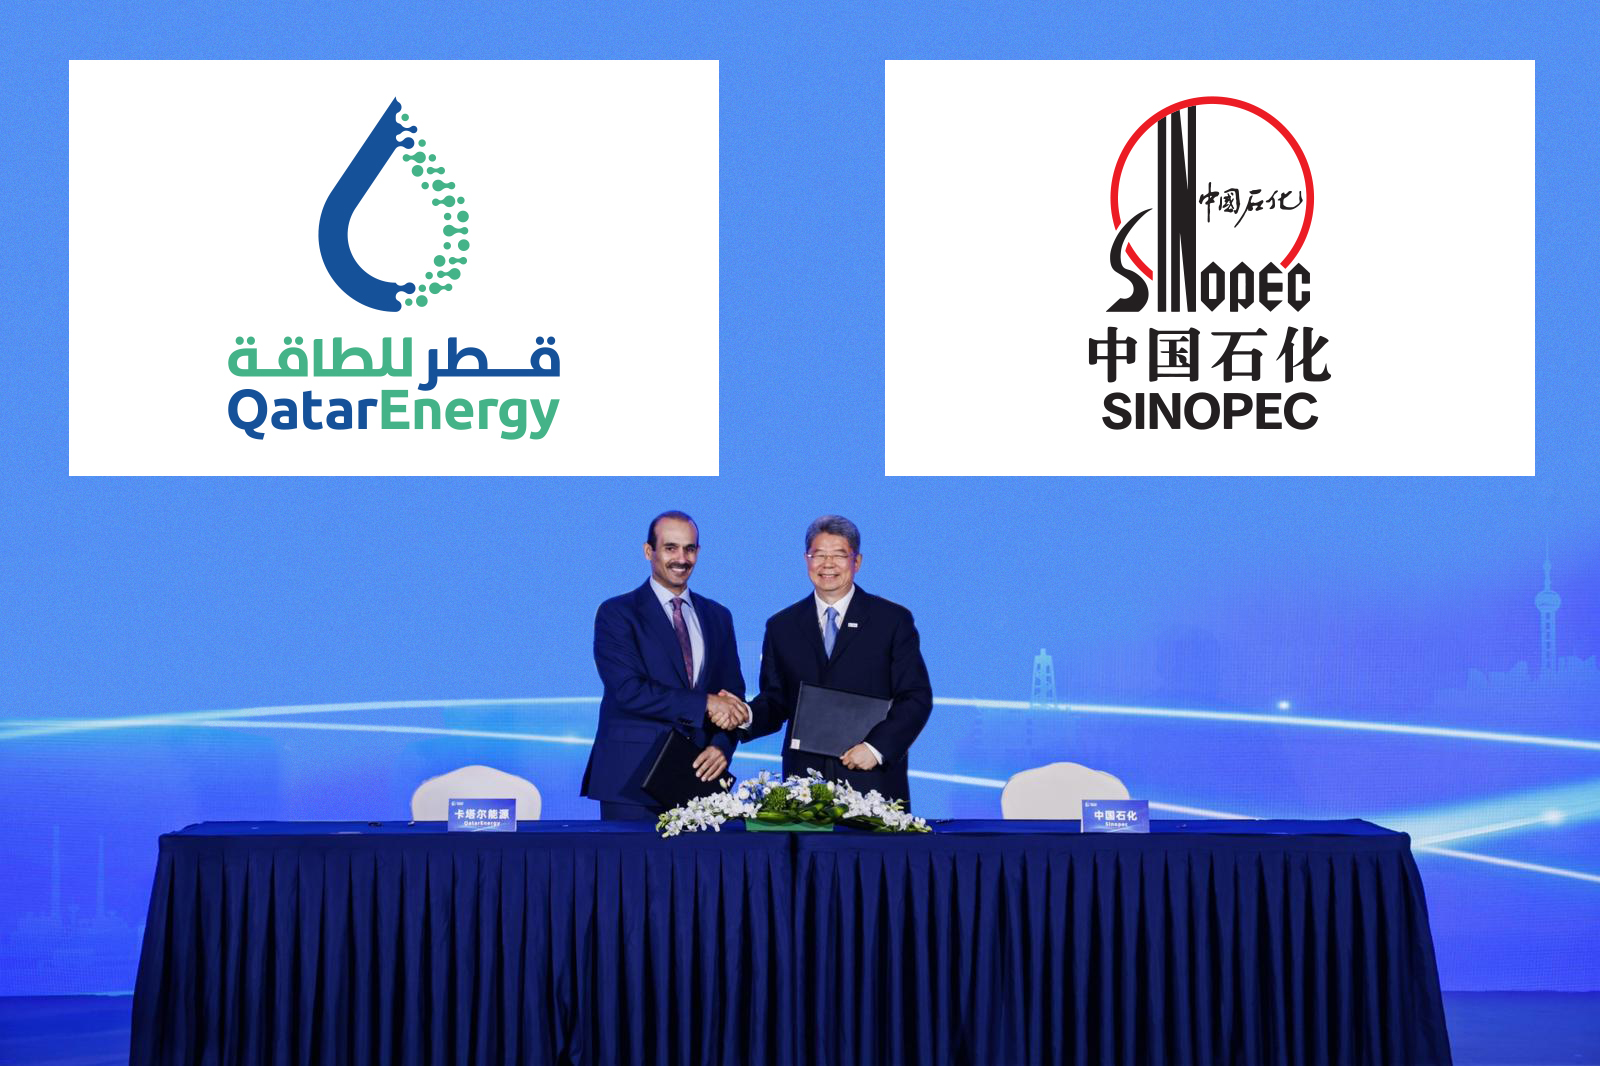 QatarEnergy, China’s Sinopec Sign 27-Year LNG Supply Agreement